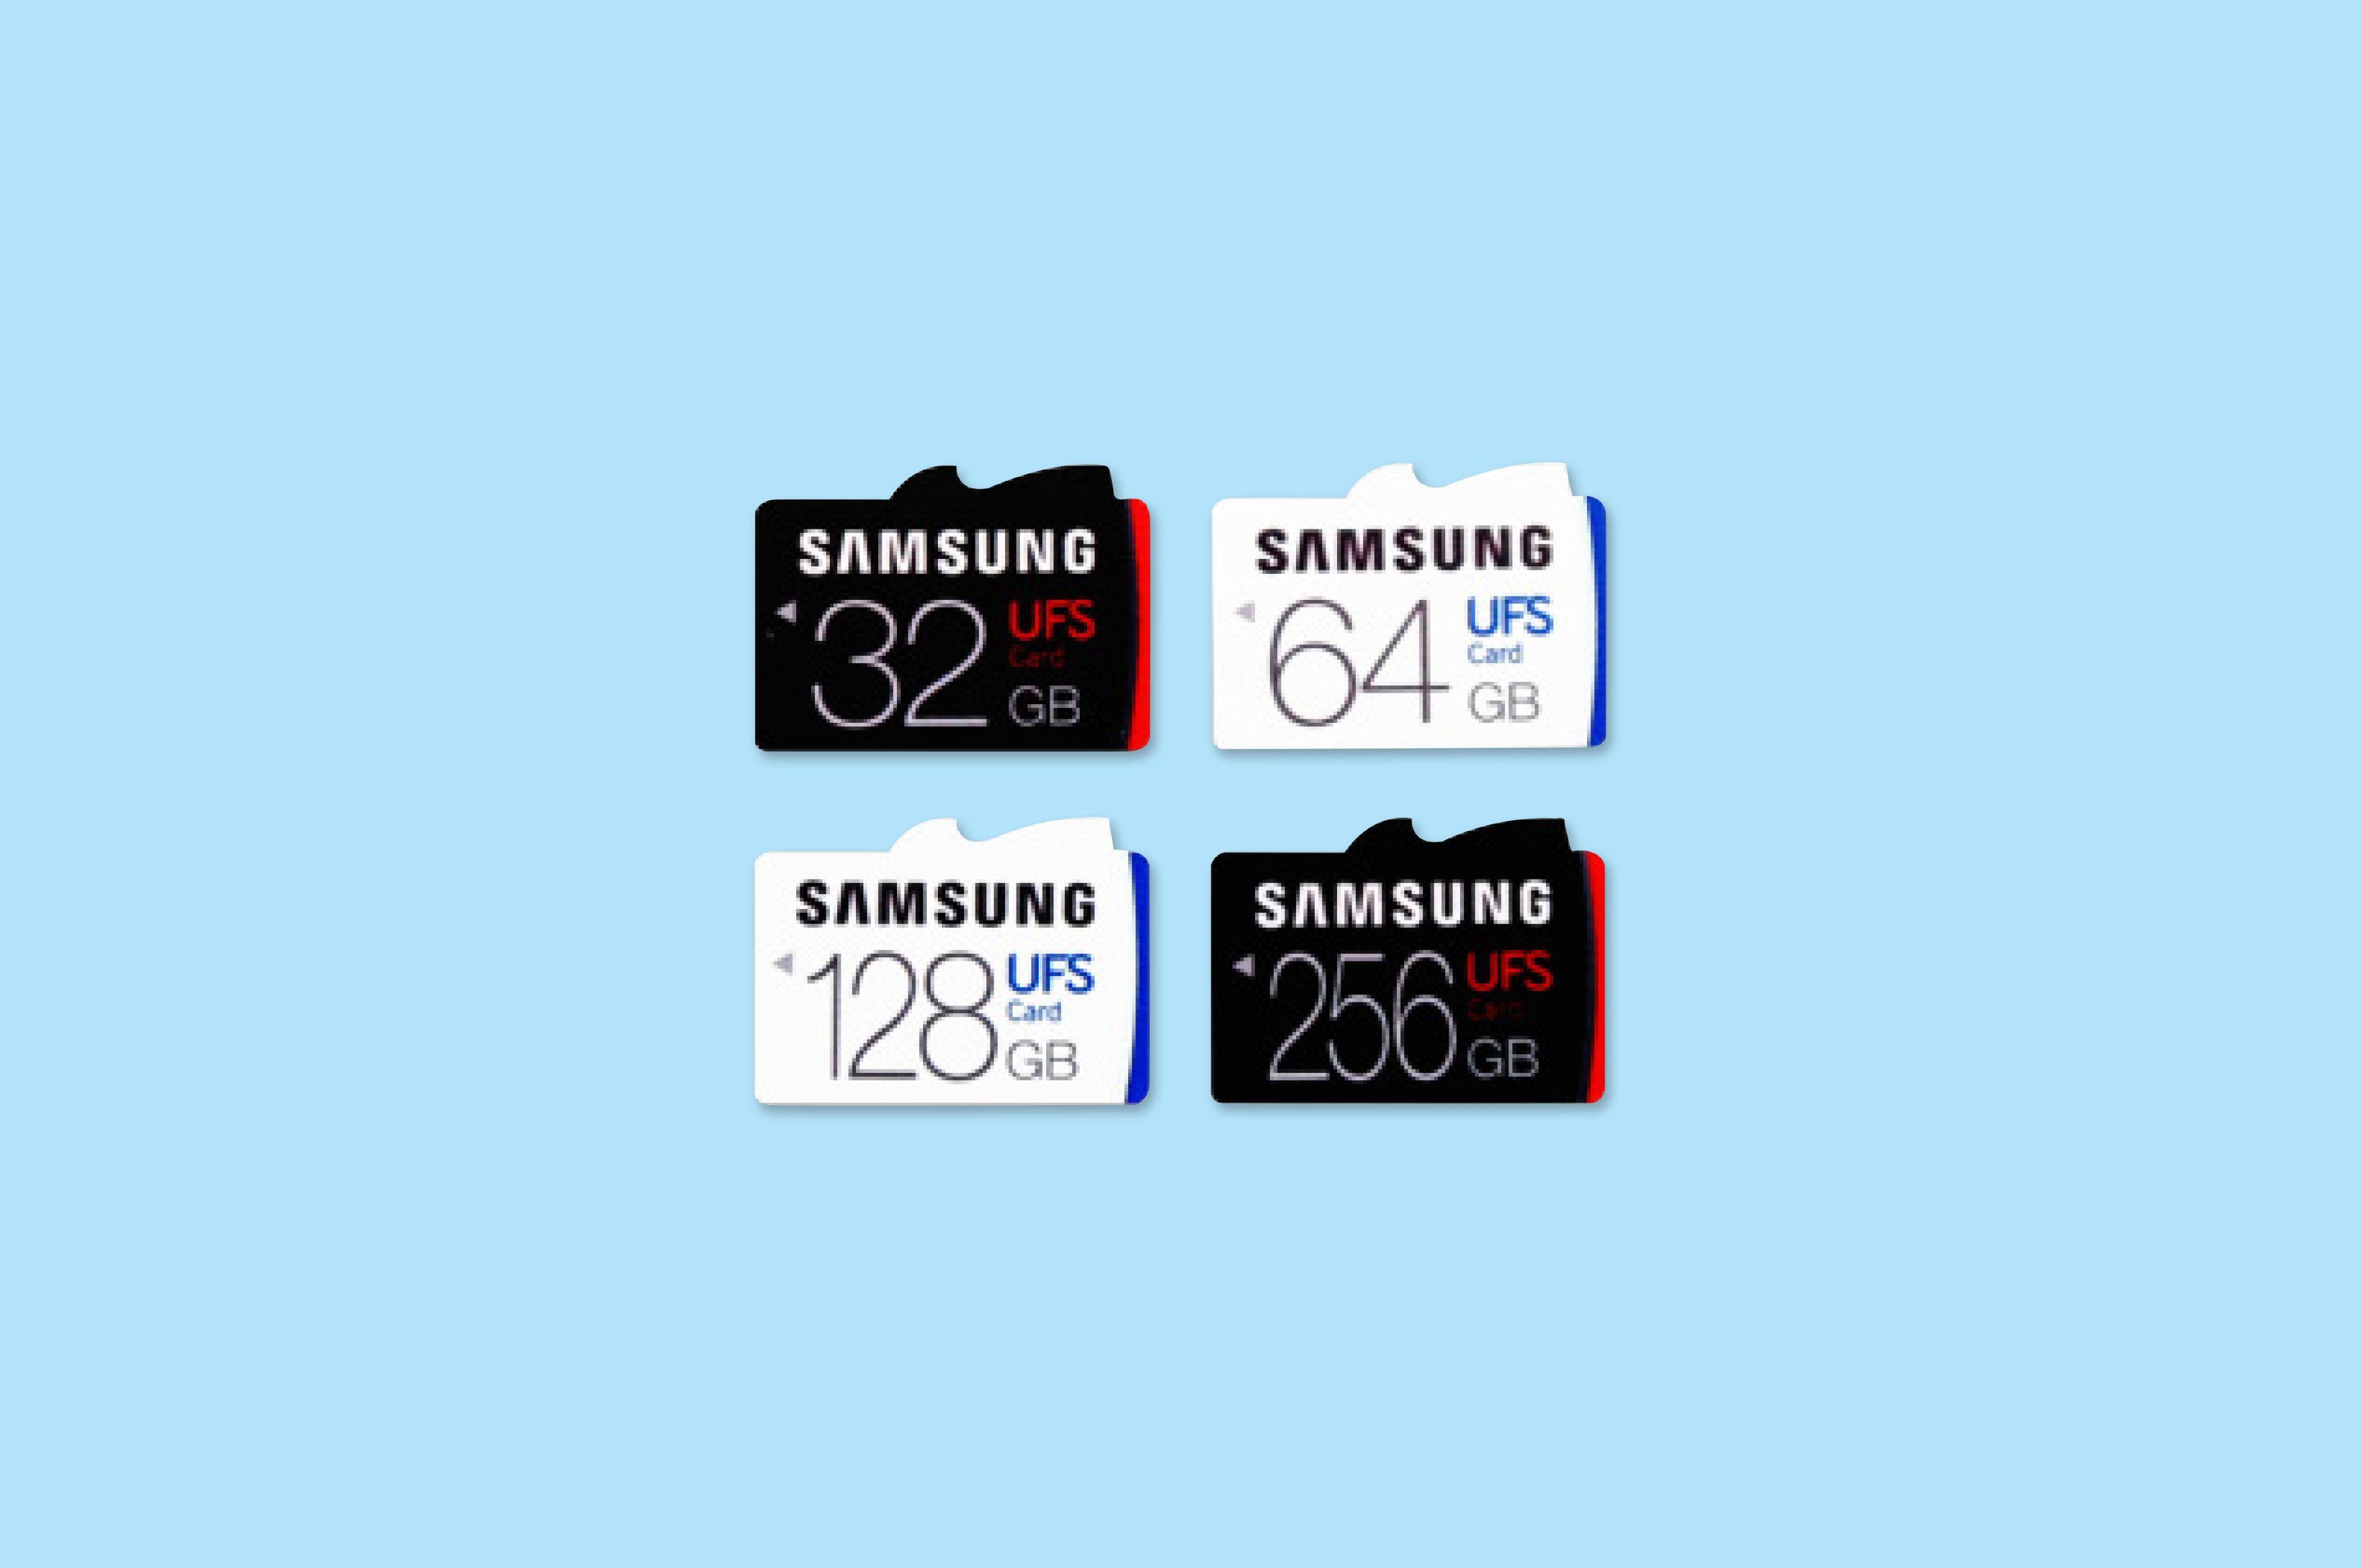 Samsung First Logo - Samsung Introduces World's First Universal Flash Storage UFS